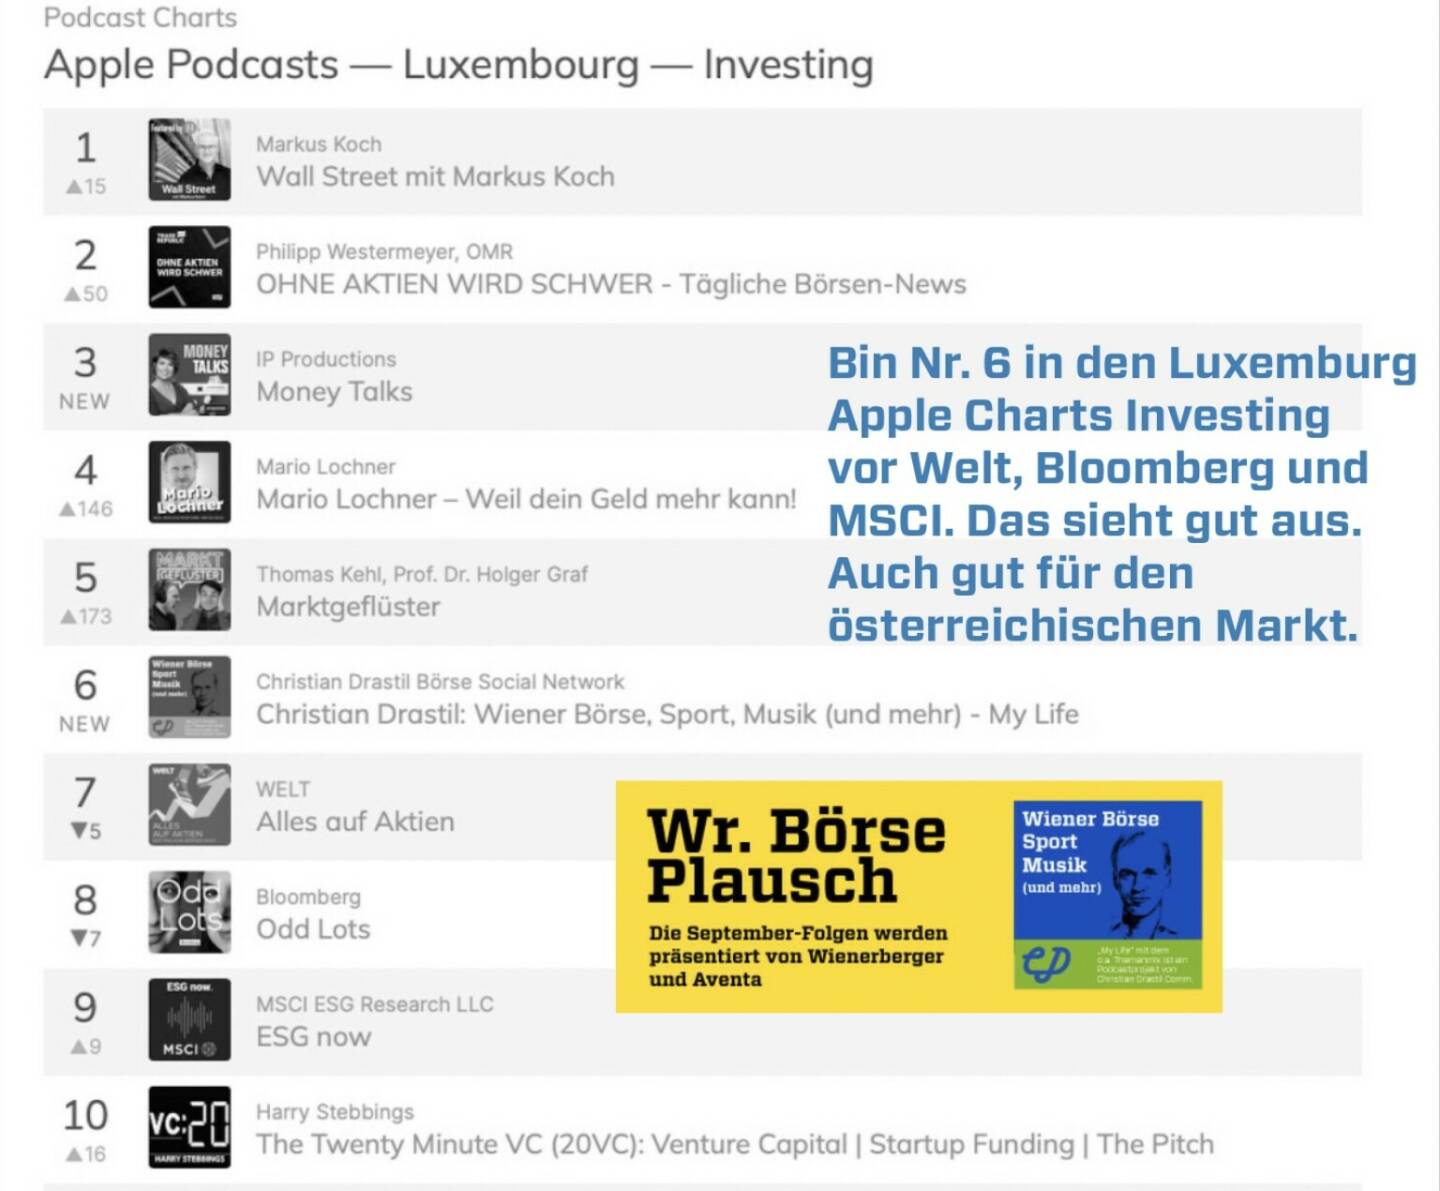 Bin Nr. 6 in den Luxemburg Apple Charts Investing vor Welt, Bloomberg und MSCI. Das lässt sich ansehen. Auch gut für den österreichischen Markt. Dies und mehr in Folge S3/18 der Wiener Börse Pläusche im Rahmen von http://www.christian-drastil.com/podcast . 